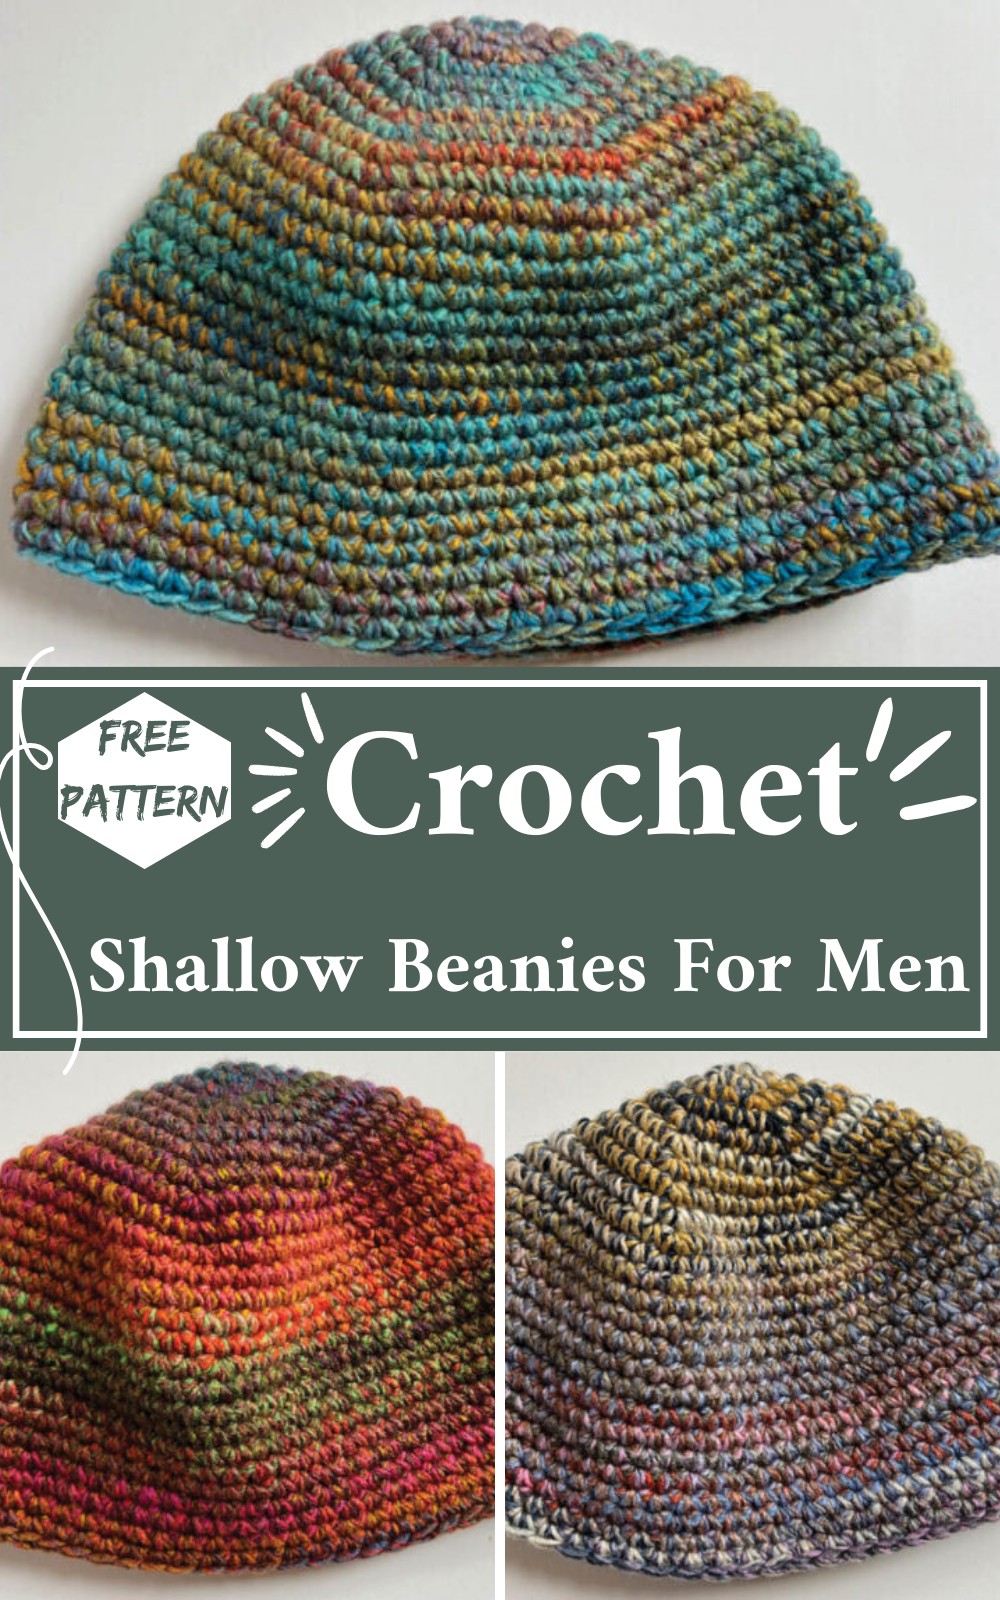 Crochet Shallow Beanies For Men